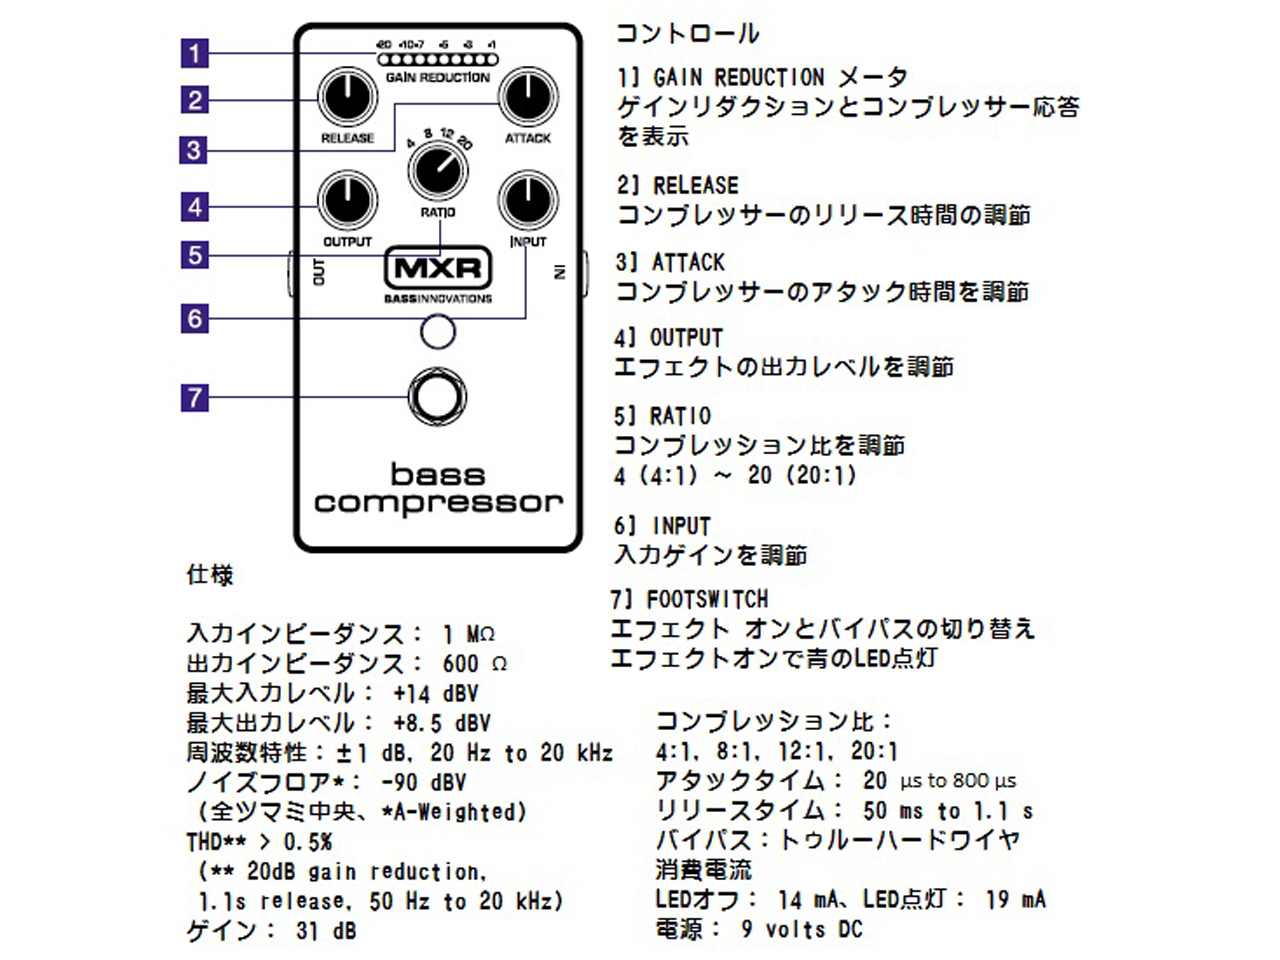 【お取寄せ商品】MXR(エムエックスアール) M87 Bass Compressor (コンプレッサー)